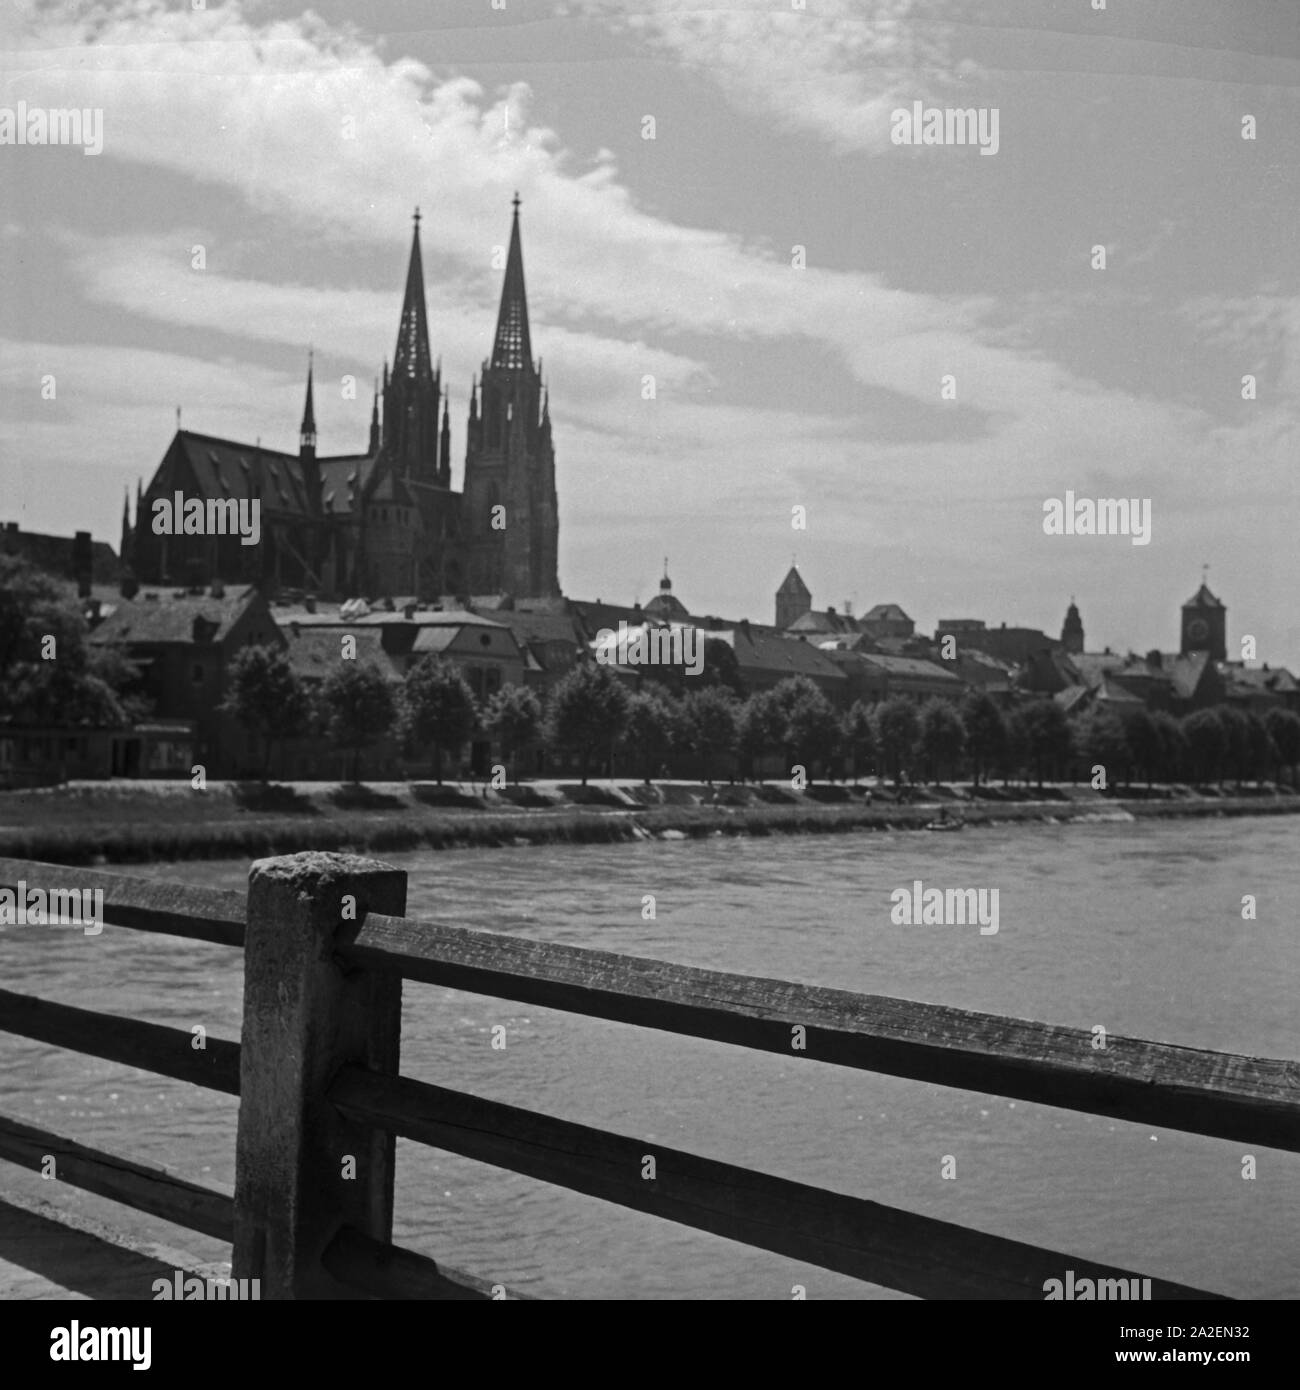 Das Panorama von Regensburg mit Dom, der Donau und dem Uhrturm des Alten Rathauses, Deutschland 1930er Jahre. Skyline von Regensburg mit Kathedrale, der Donau und dem Glockenturm von Altes Rathaus Rathaus, Deutschland 1930. Stockfoto